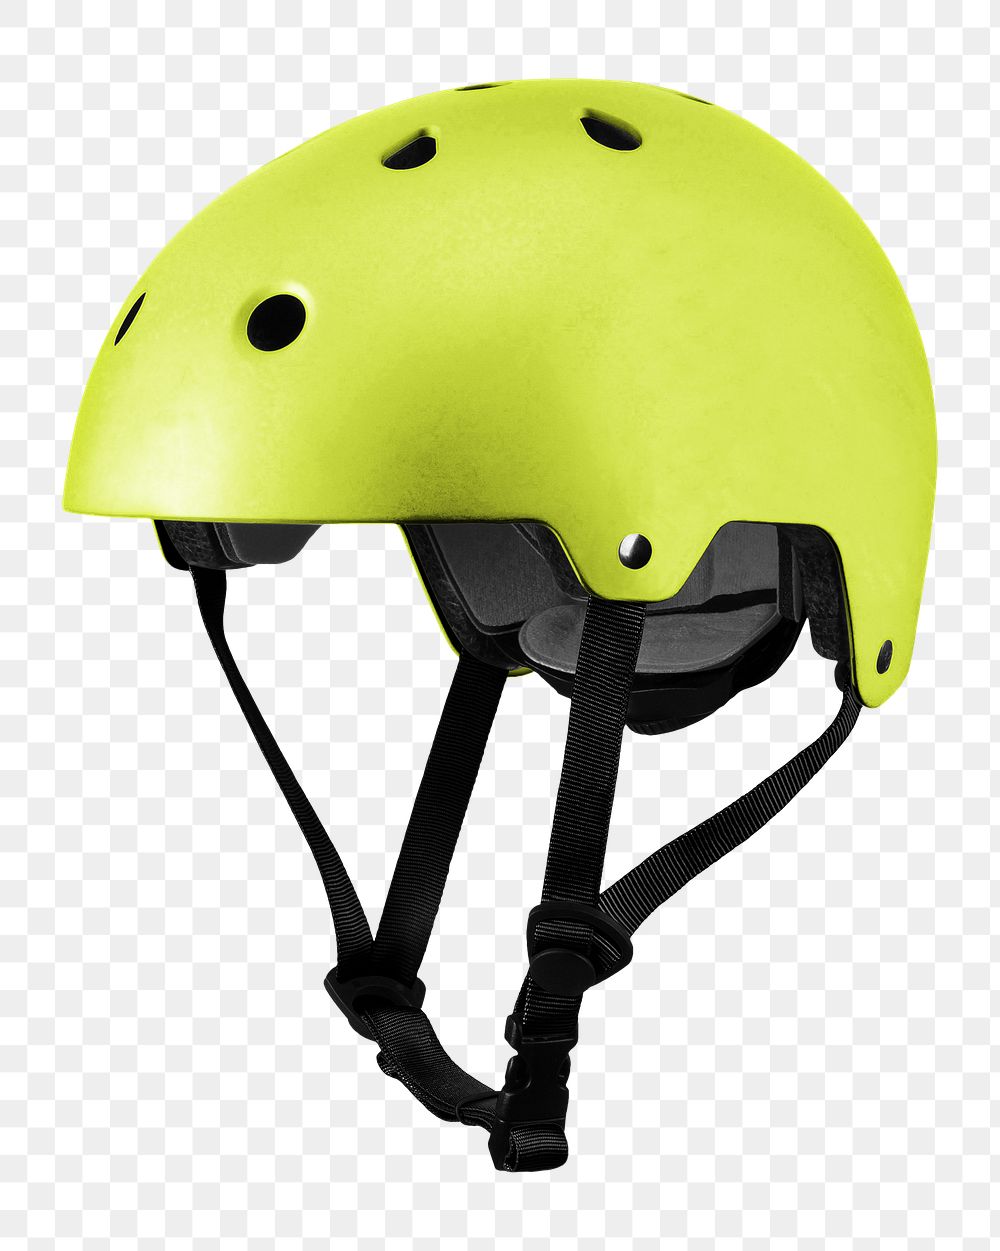 Green bike helmet png, transparent background